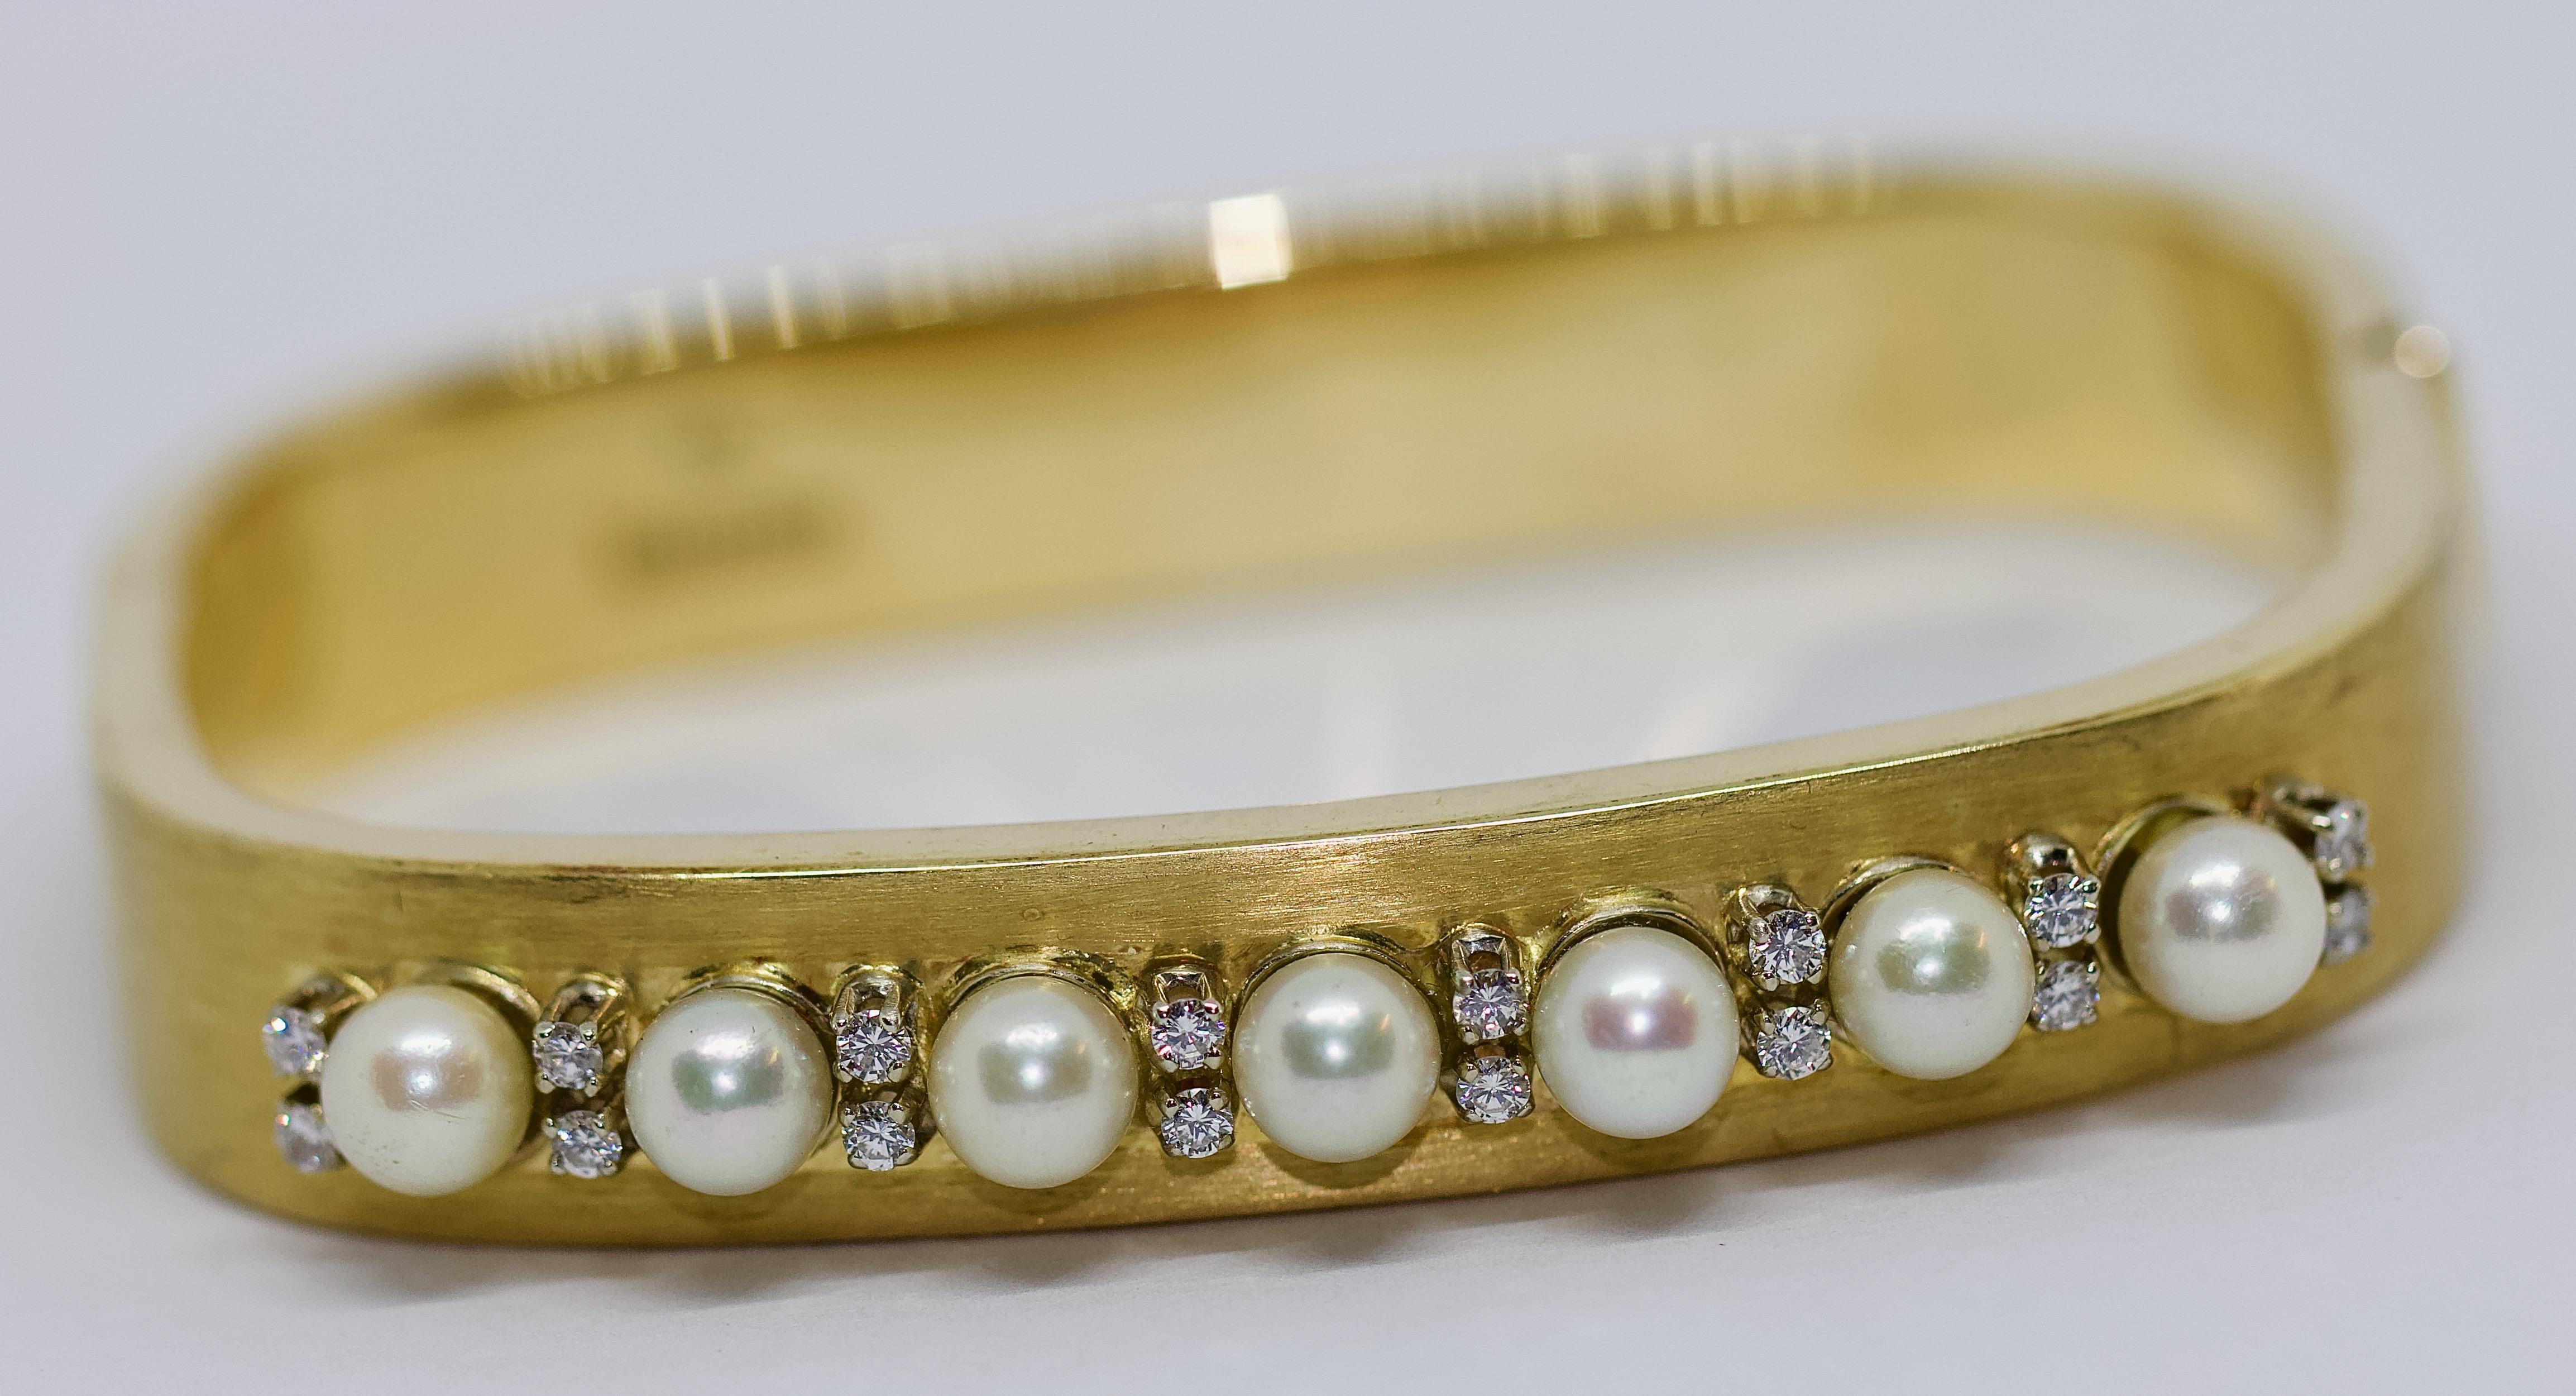 Bracelet pour dames, or 14K, avec perles et diamants.

Diamants de très bonne qualité, blancs.

Le bracelet est poinçonné.

Certificat d'authenticité inclus.